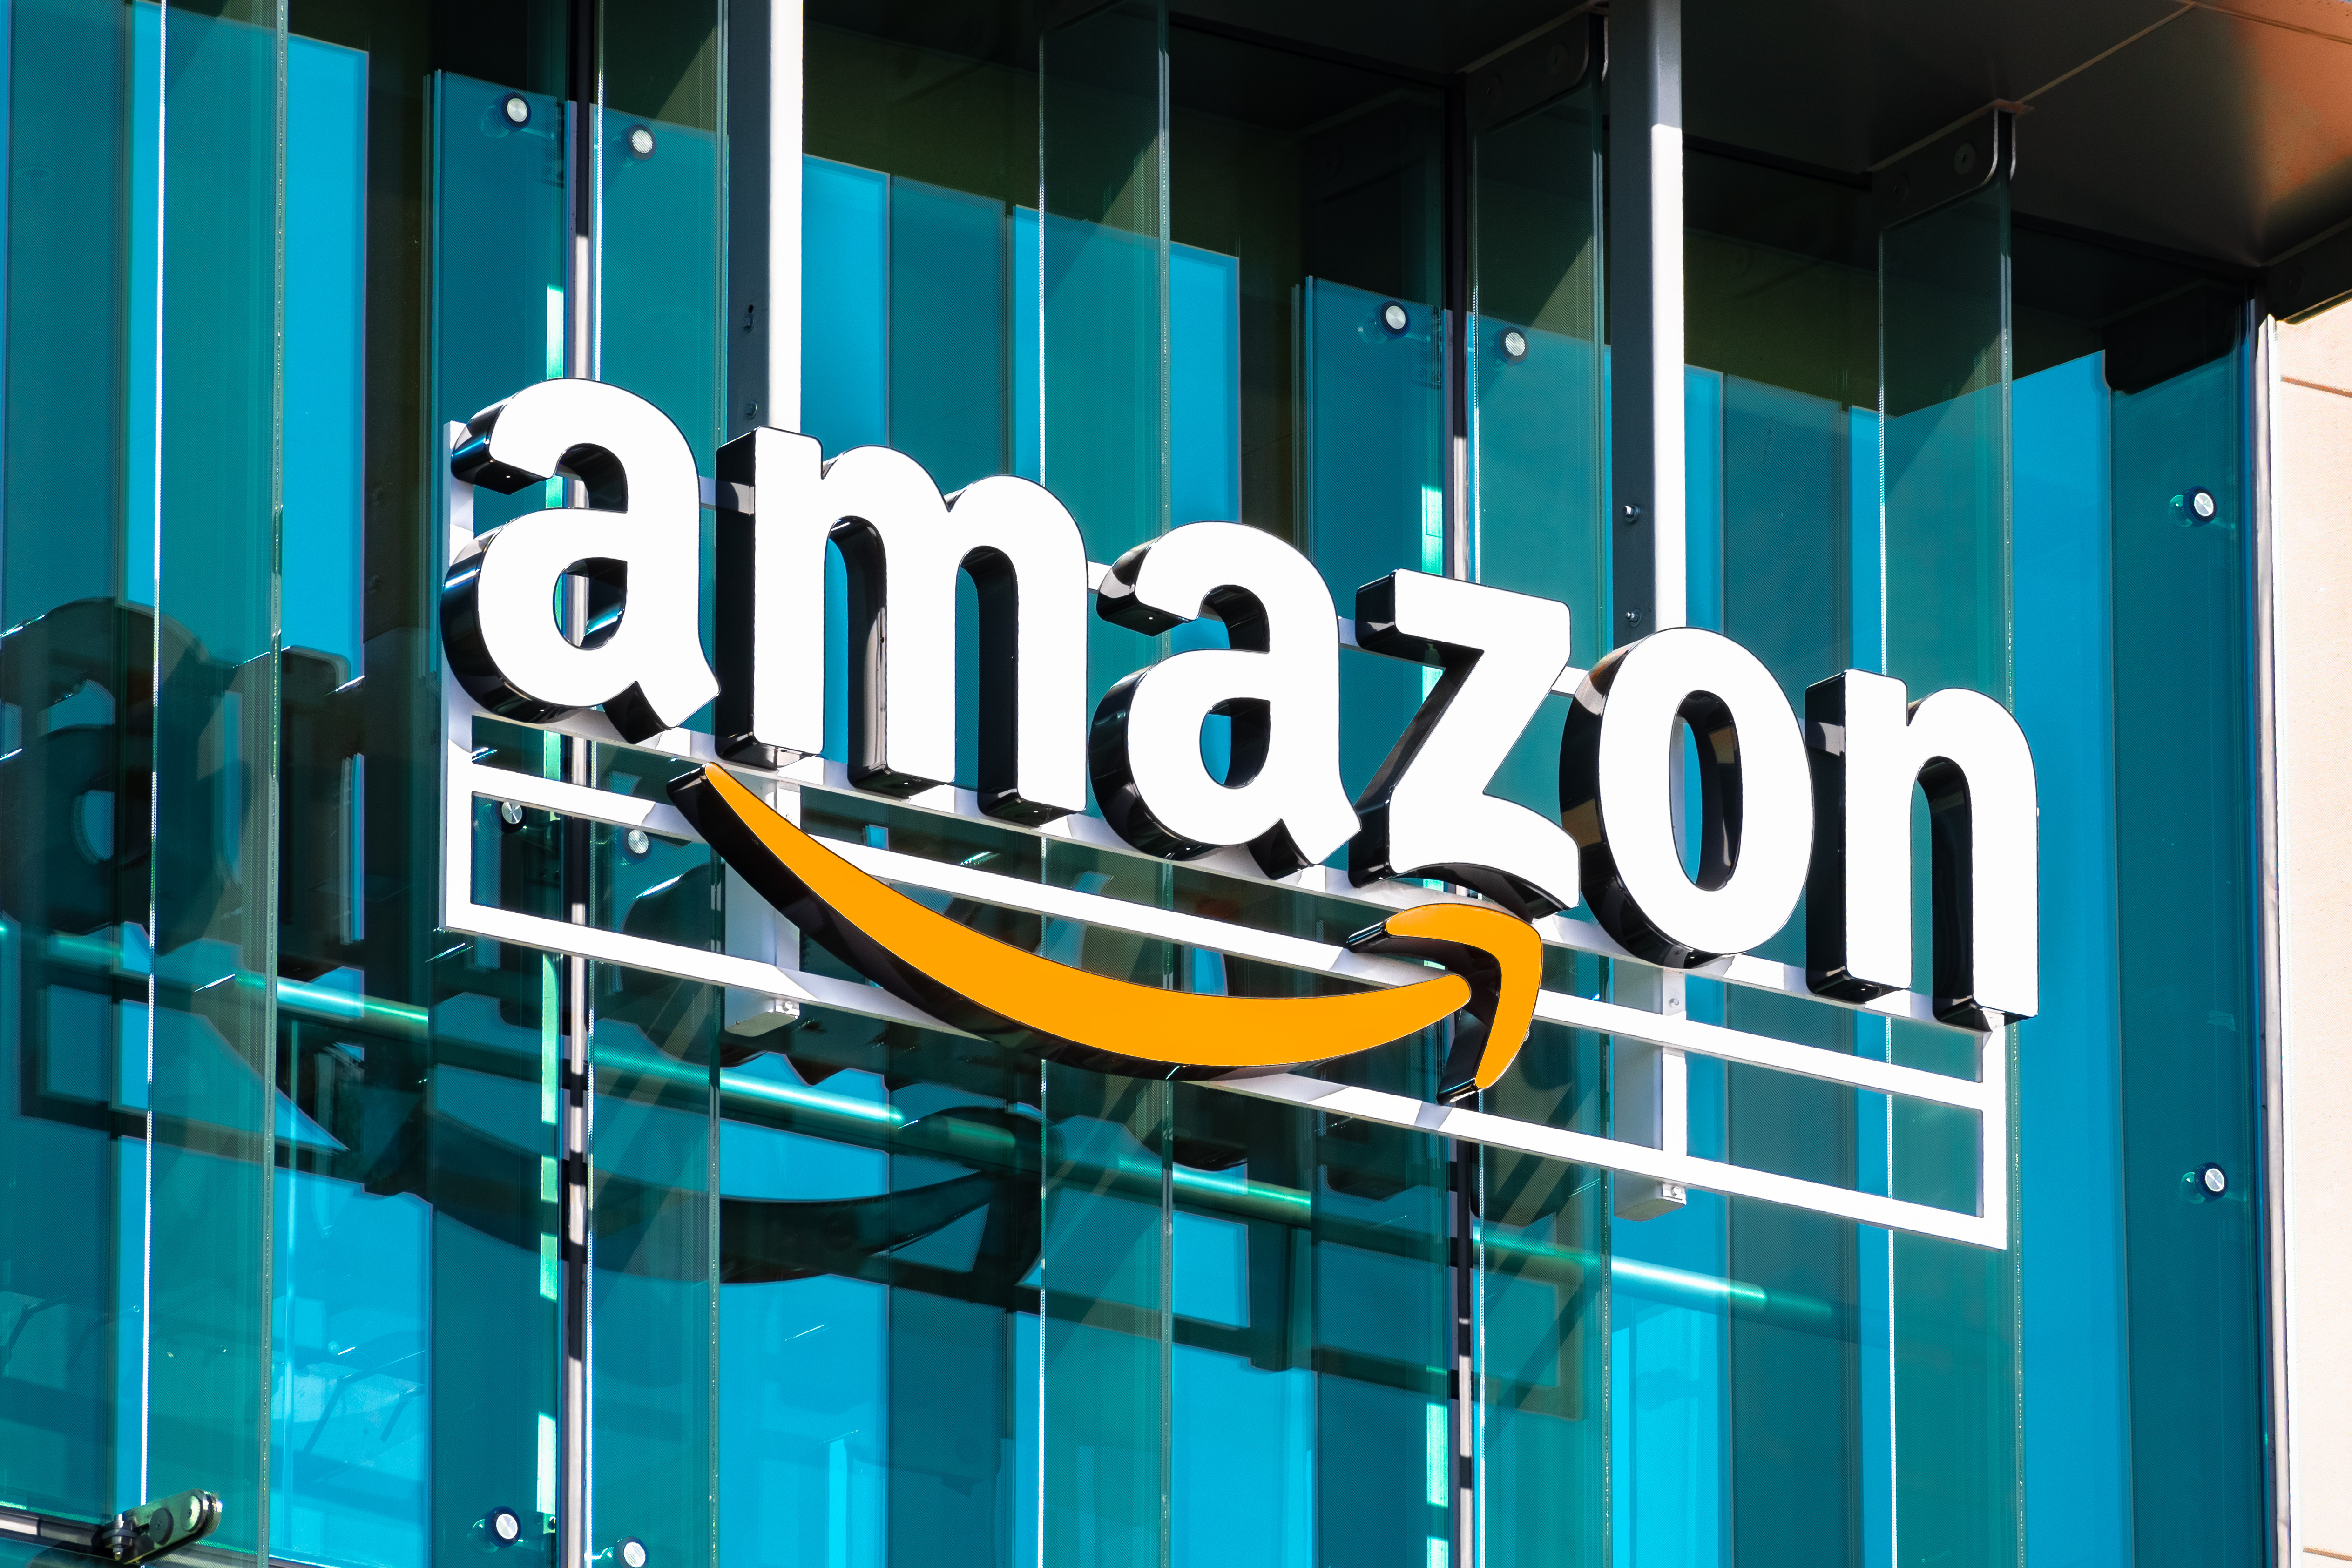 Amazon sprzedaje hulajnogi elektryczne za 9 zł? CyberRescue ostrzega!